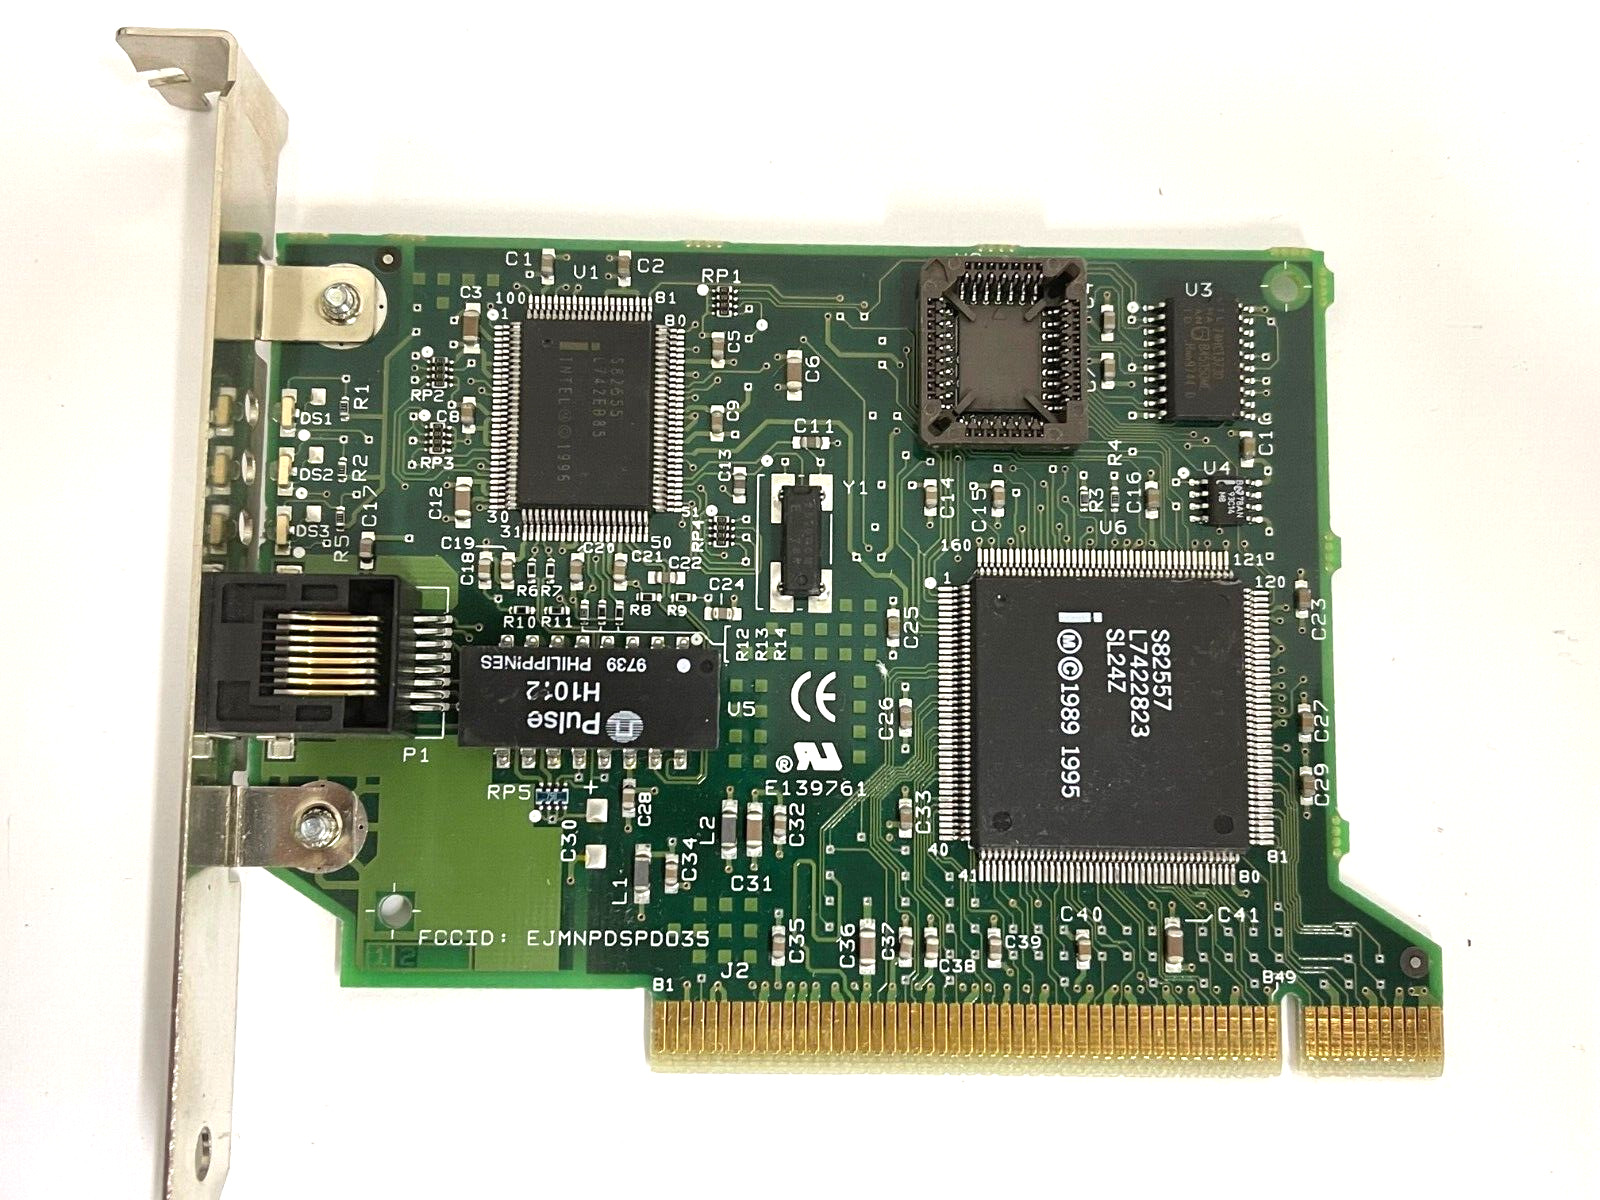 VINTAGE 1997 INTEL 10/100 PCI ETHERNET CARD FCC EJMNPDSPDO35 RJ45 LAN13